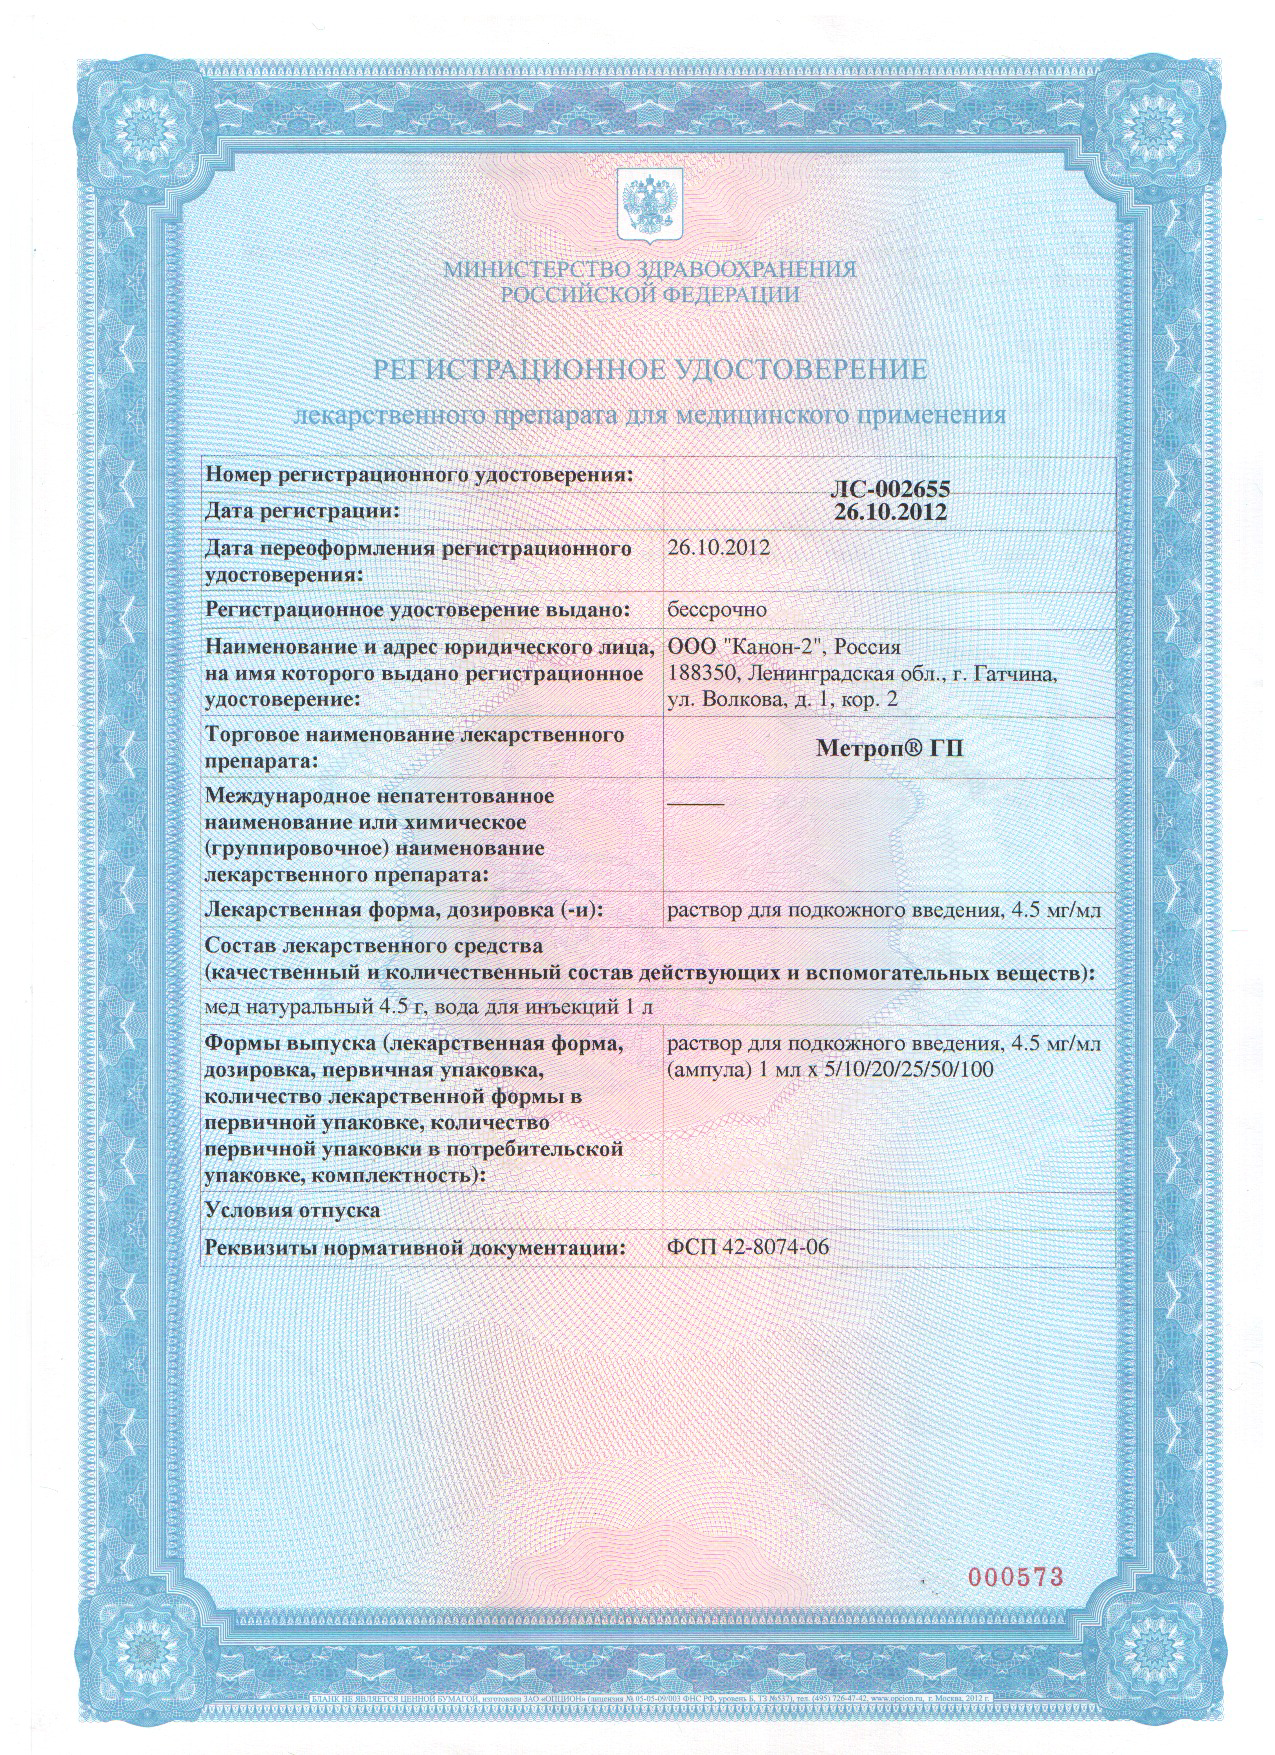 МЕТРОП ГП - Регистрационное удостоверение